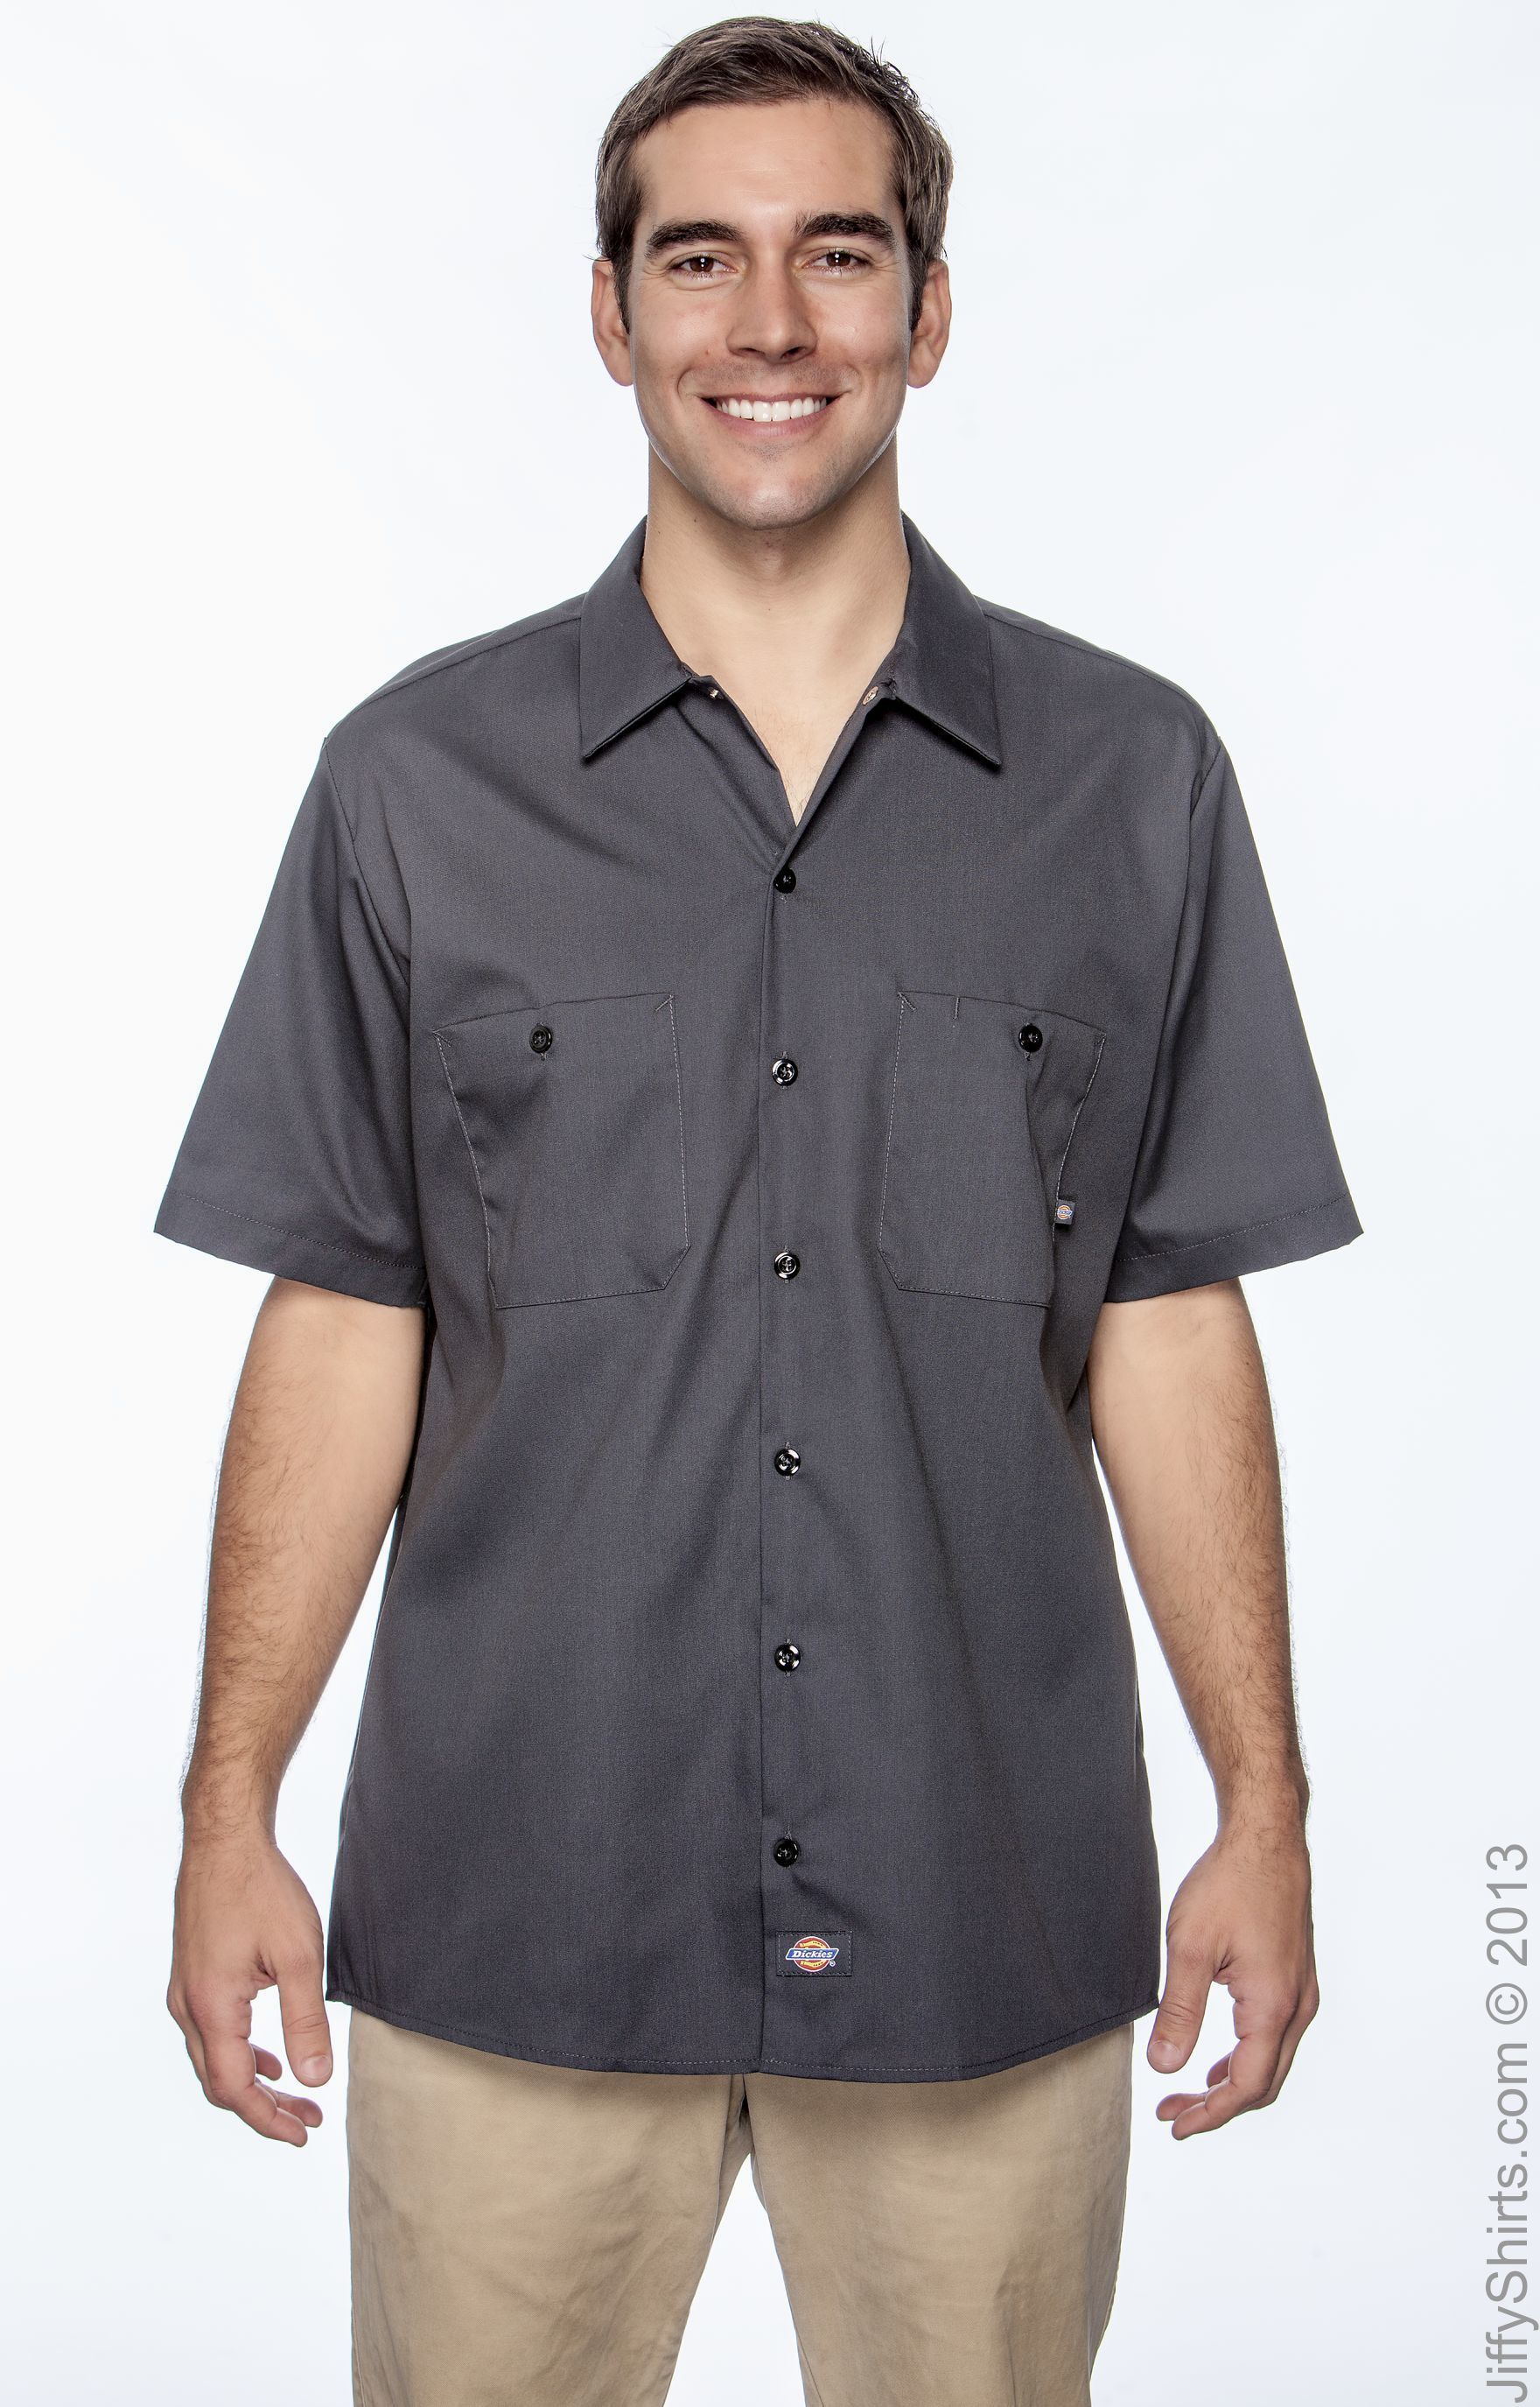 Dickies Ls535 Short Sleeve Industrial Work Shirt 